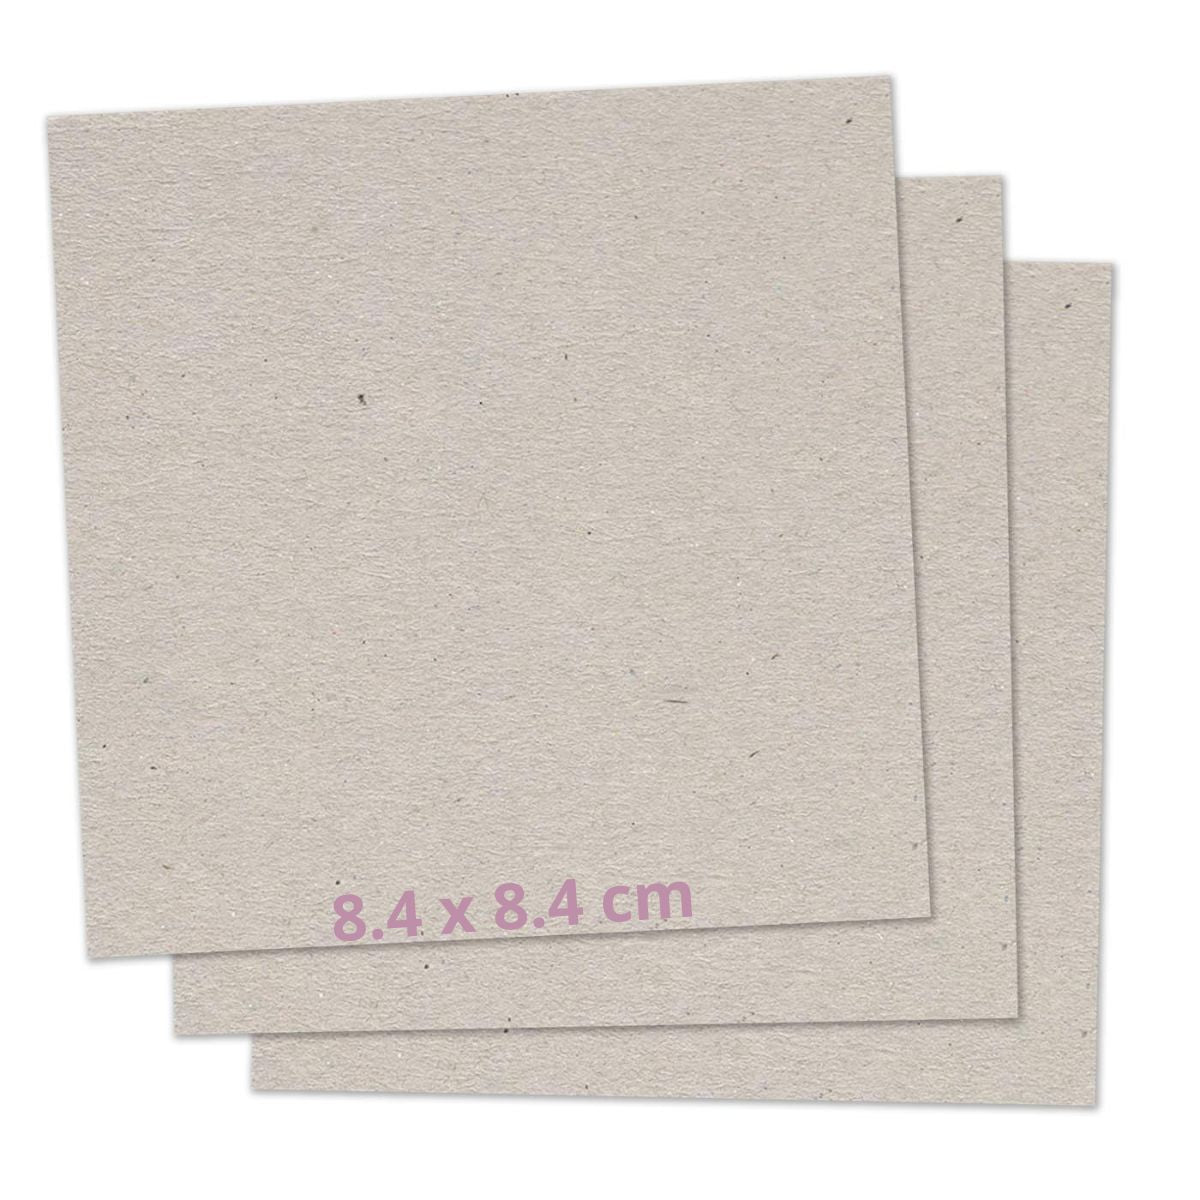 11 Piezas Cartón Gris para Libretas Post-It 8.4cm